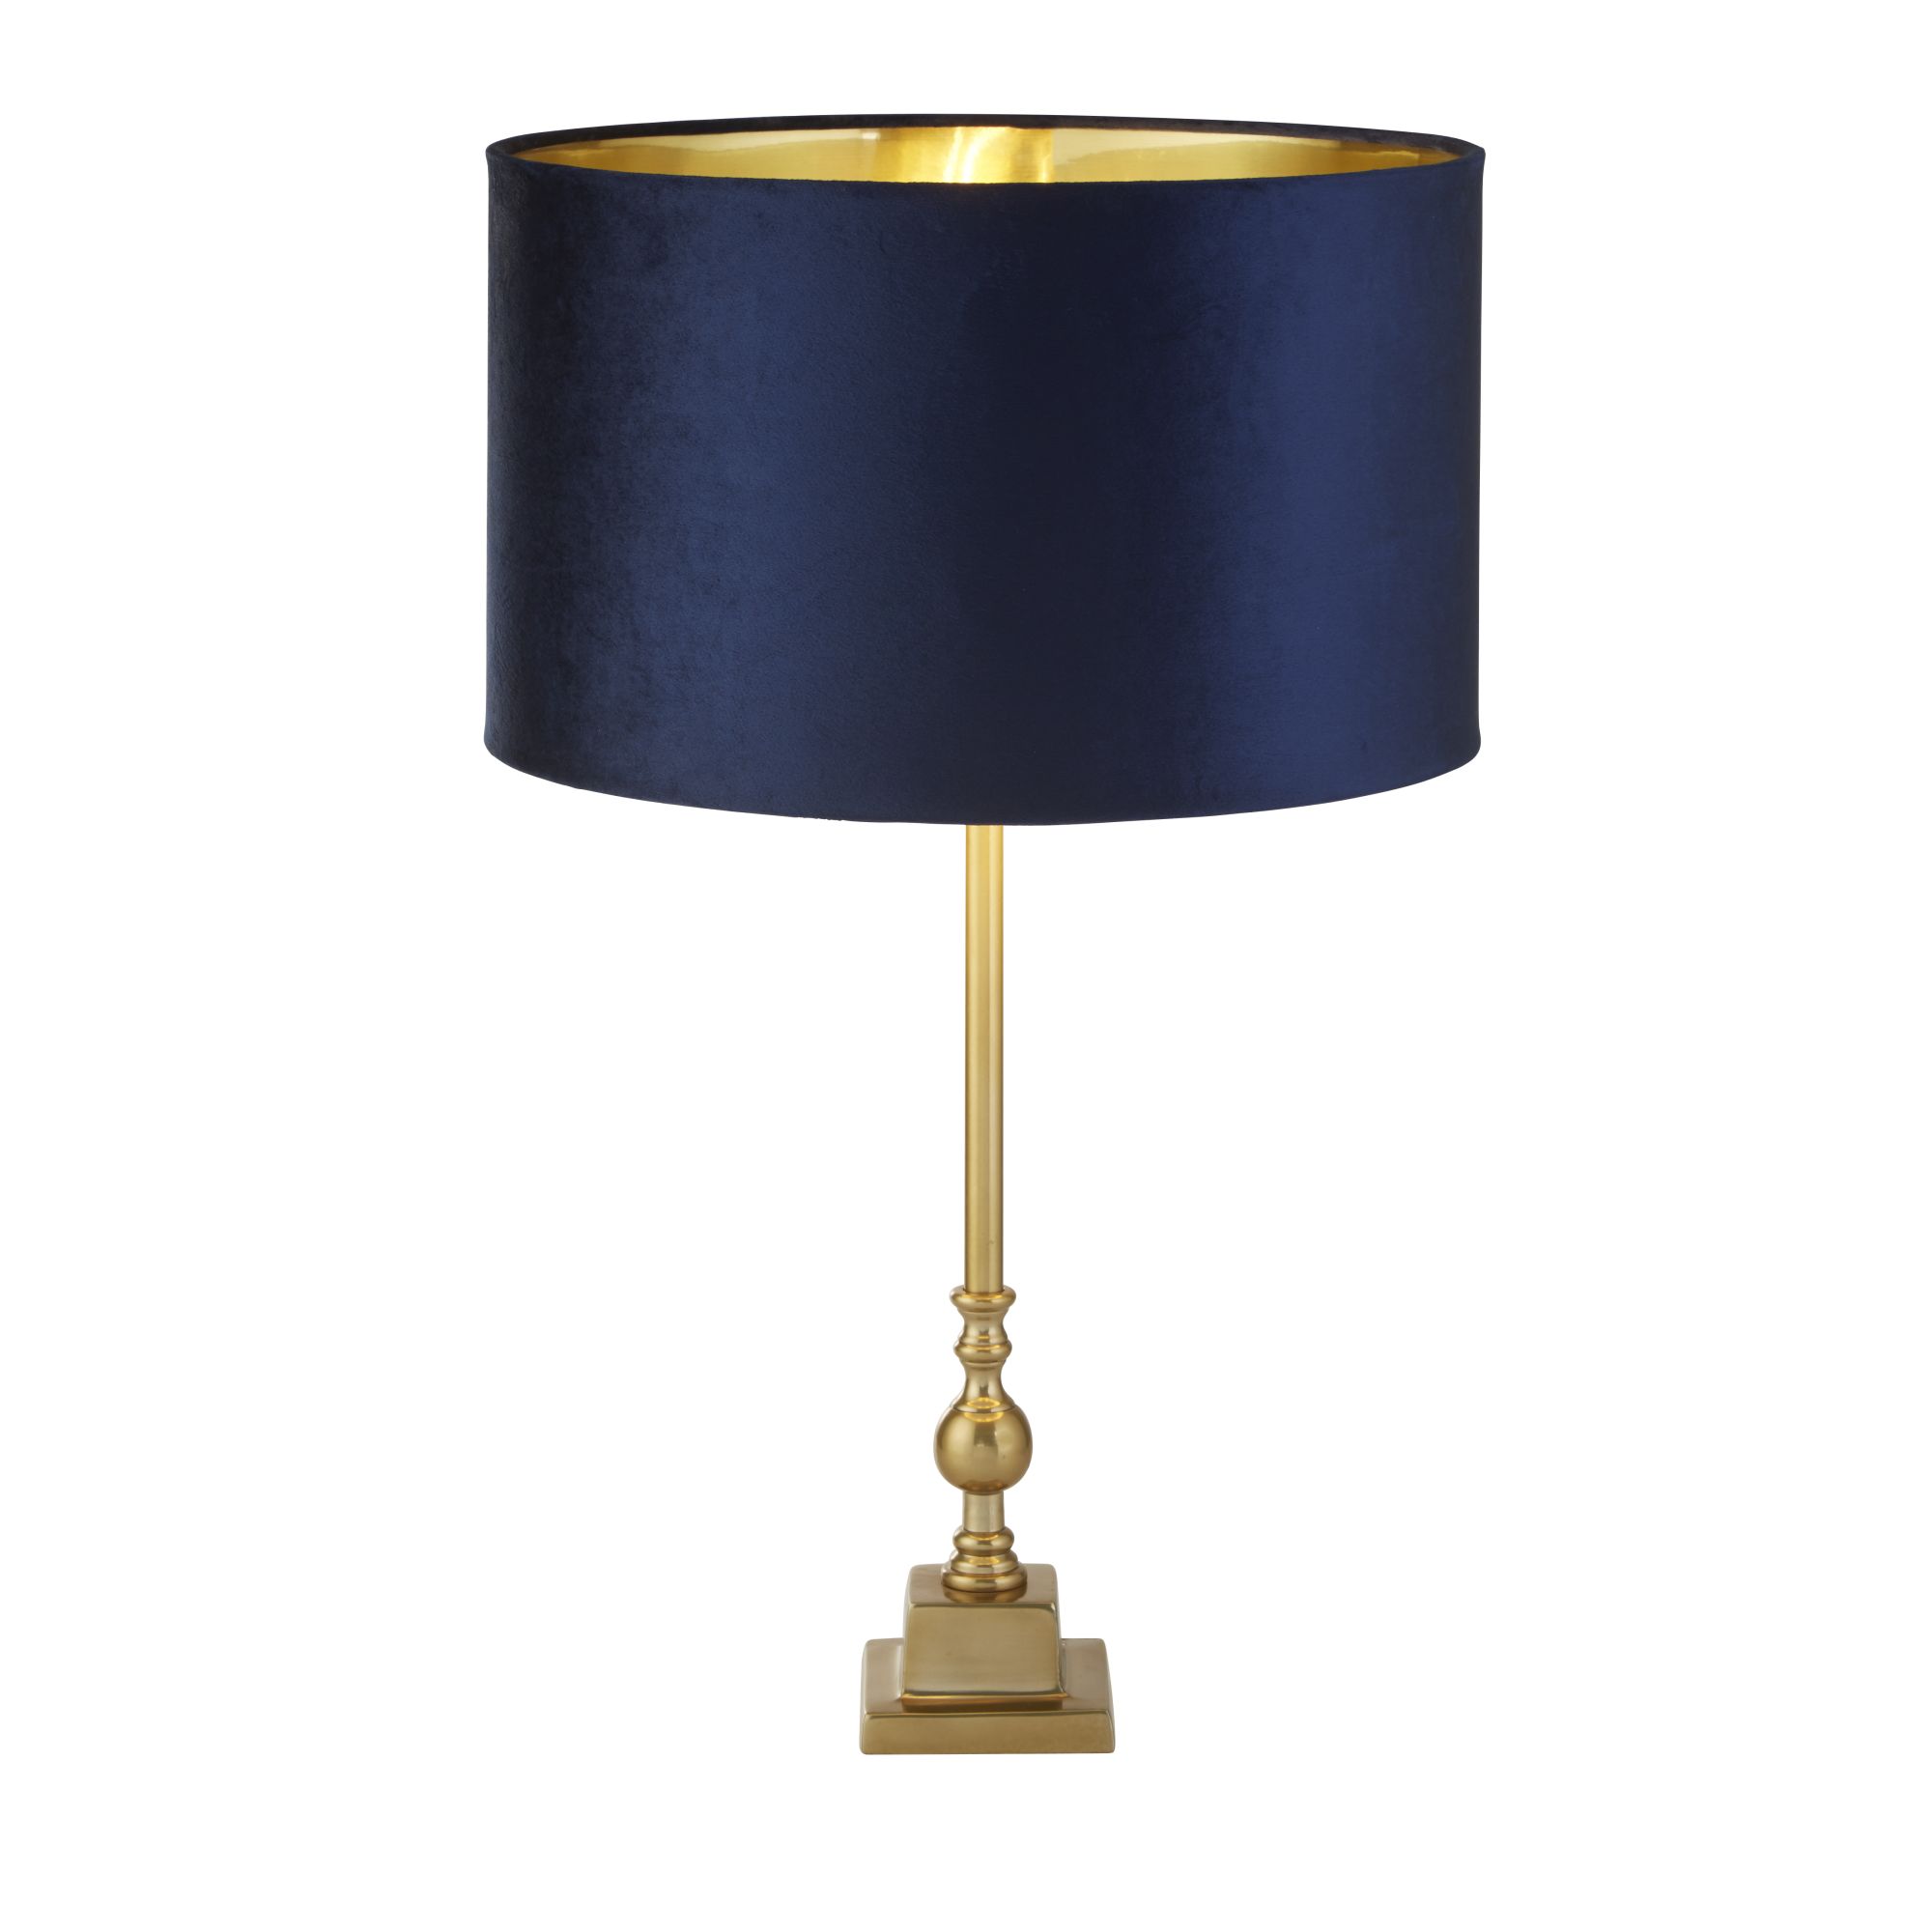 Whitby Table Lamp - Antique Brass Metal & Navy Velvet Shade